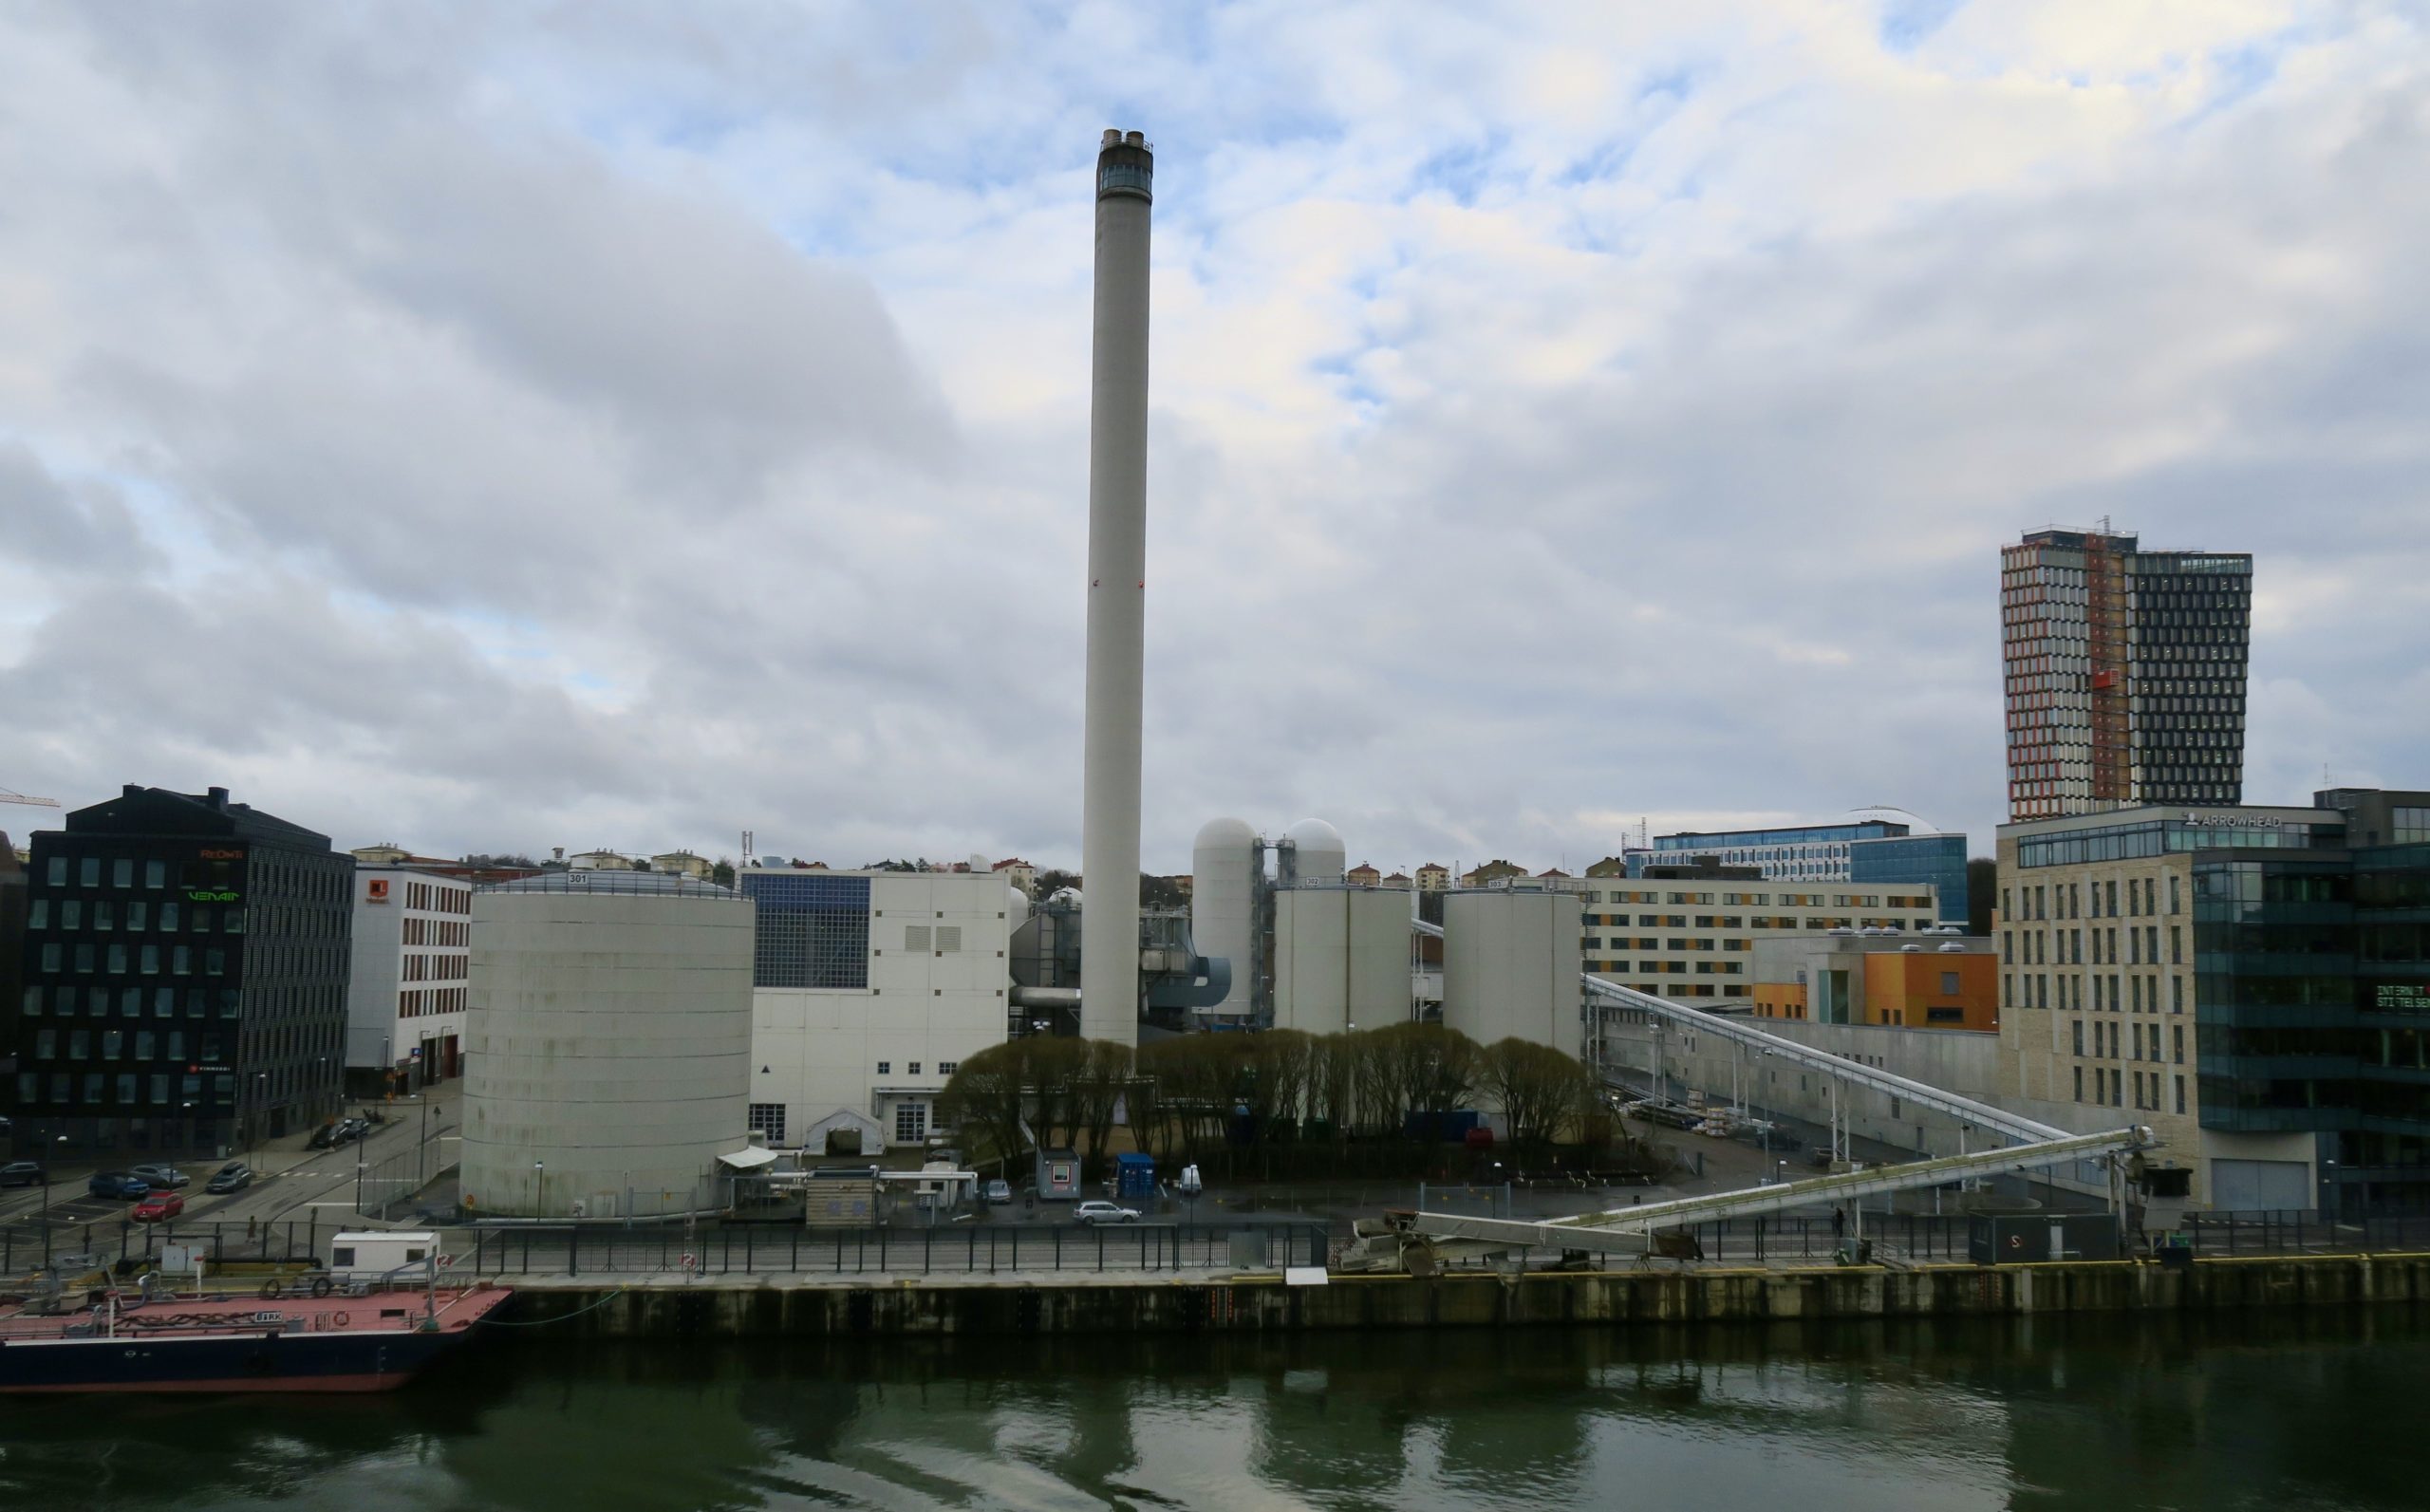 Världen sstörsta anläggning i sitt slag. Värmeverket i Hammarby sjöstad. 